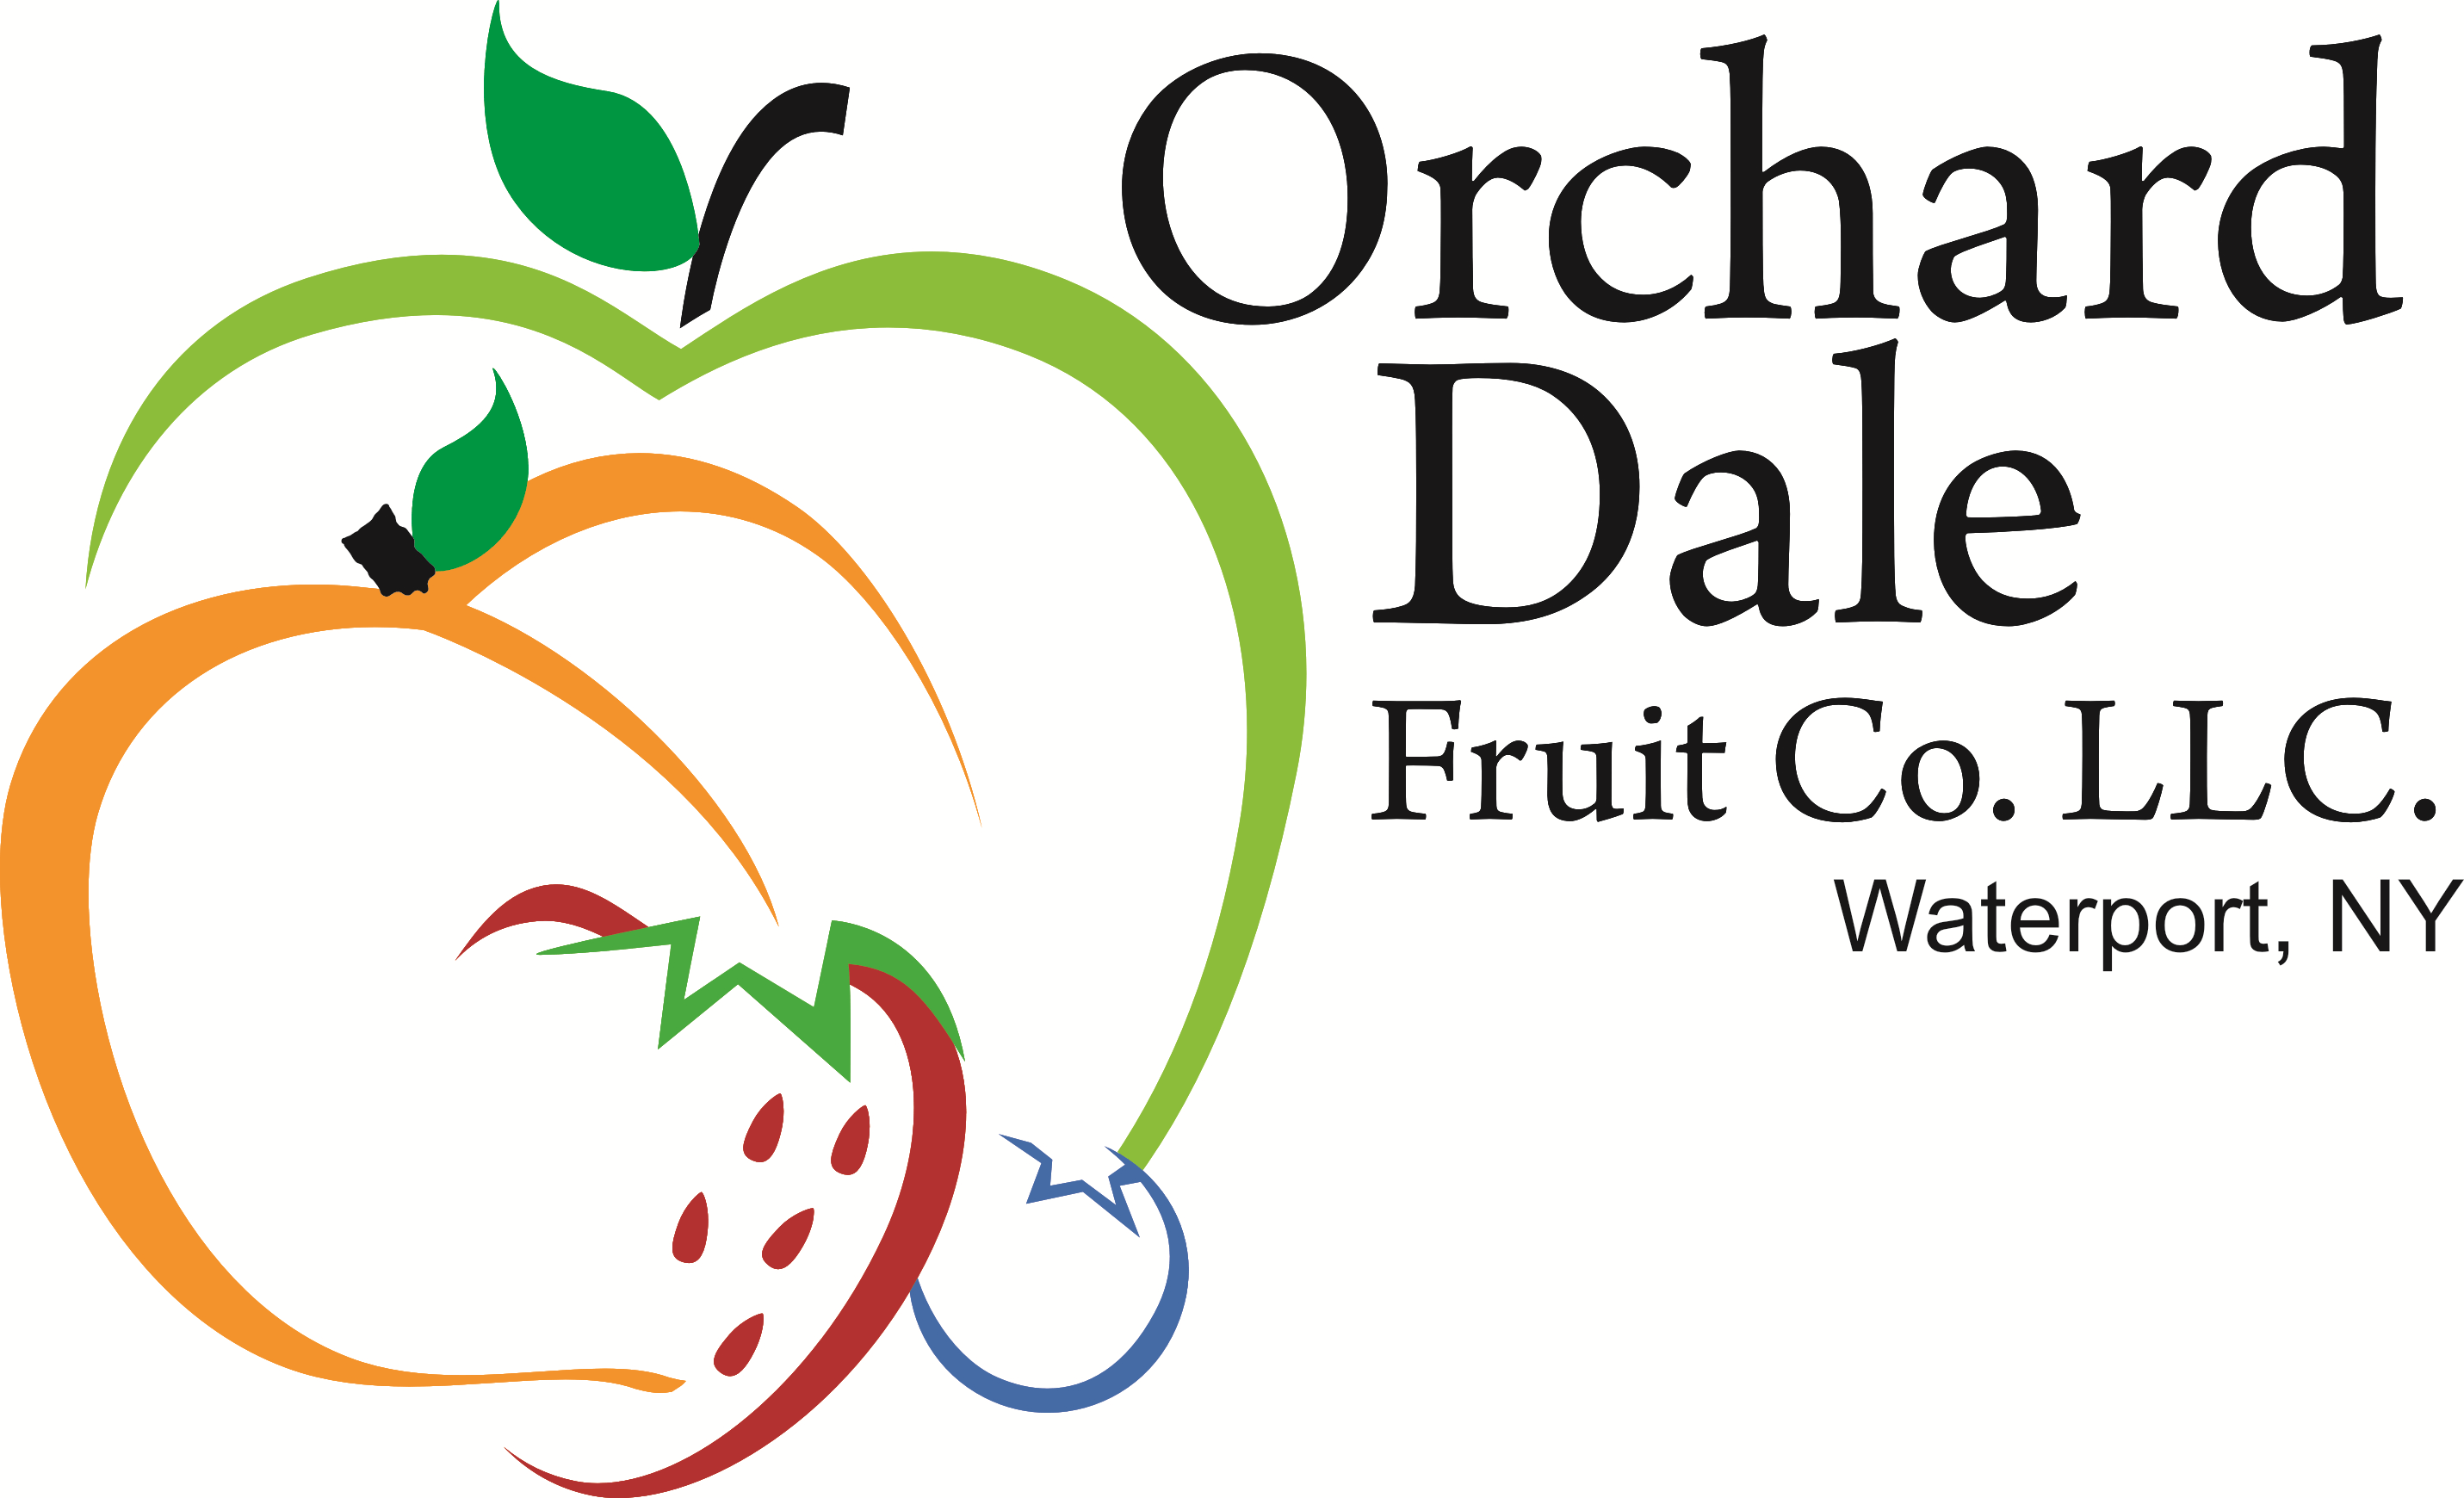 Fruit Company Logo - Orchard Dale Fruit Co